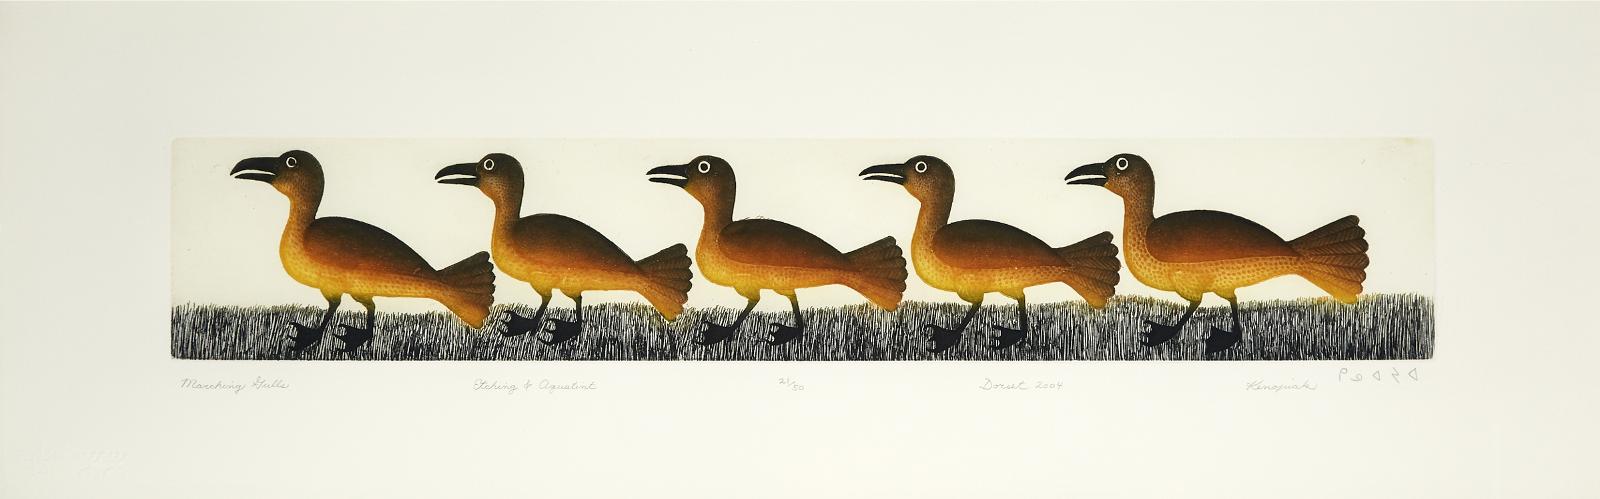 Kenojuak Ashevak (1927-2013) - Marching Gulls